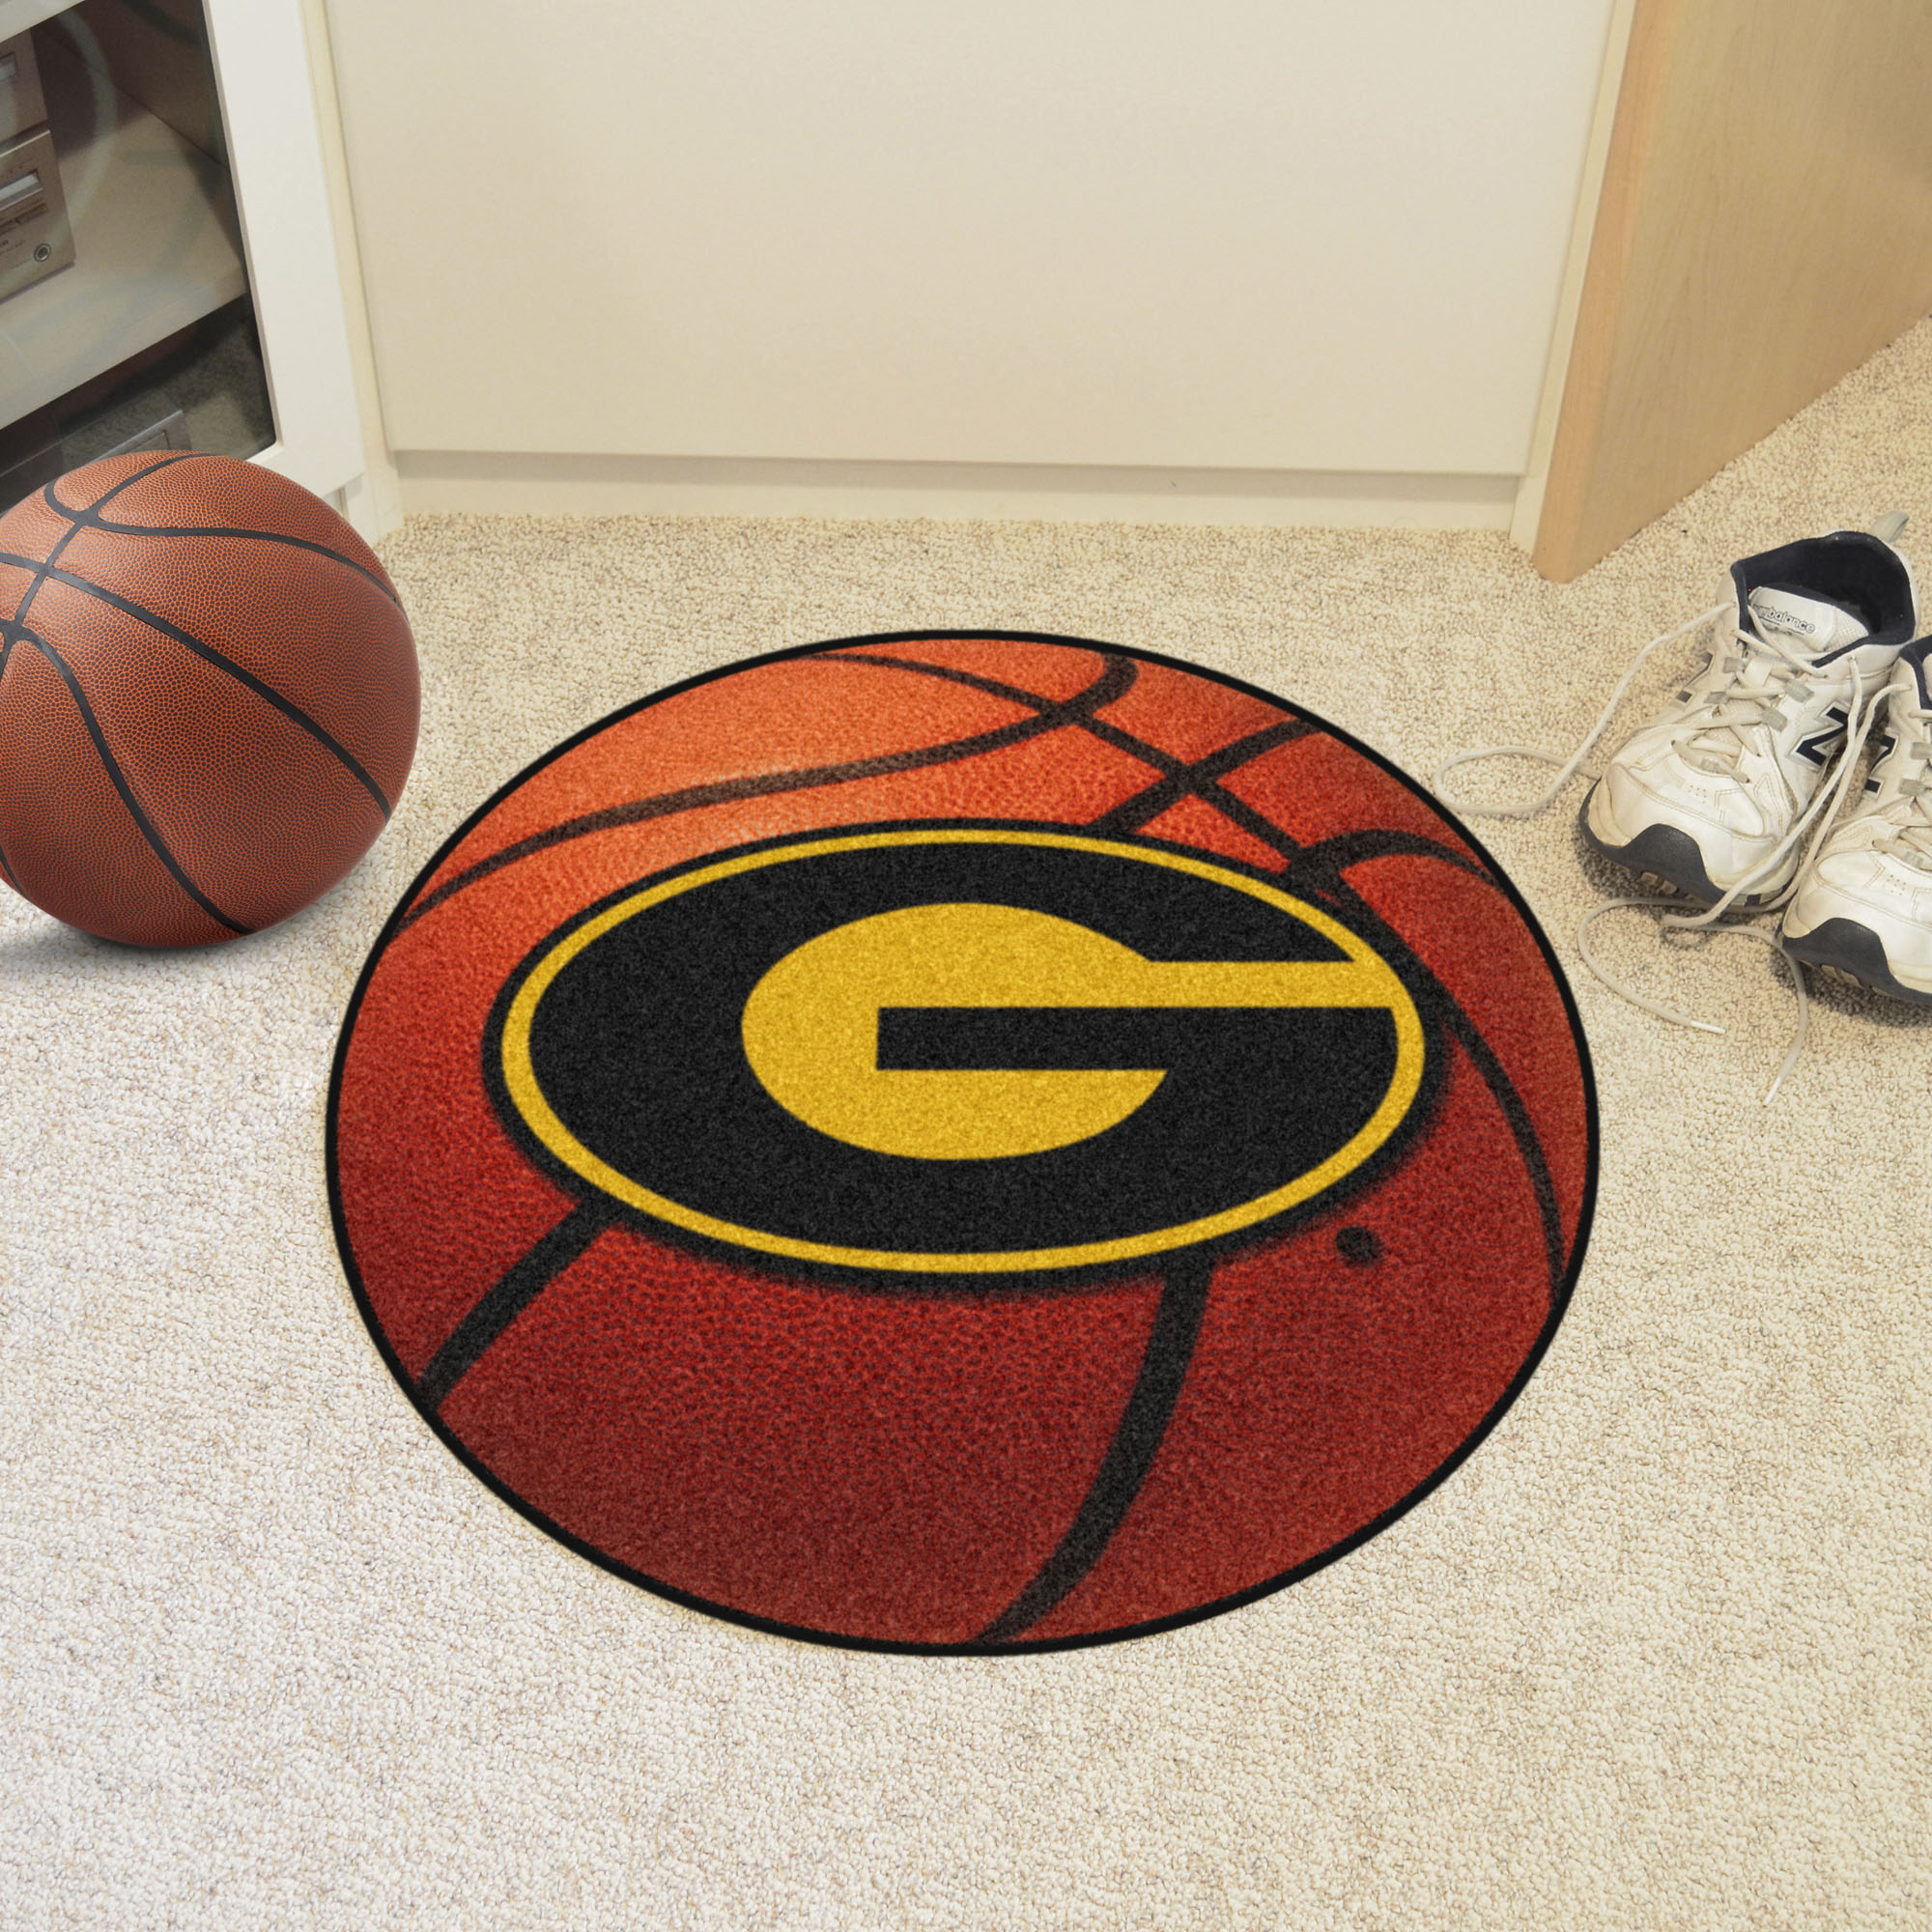 Grambling State University Ball Shaped Area rugs (Ball Shaped Area Rugs: Basketball)